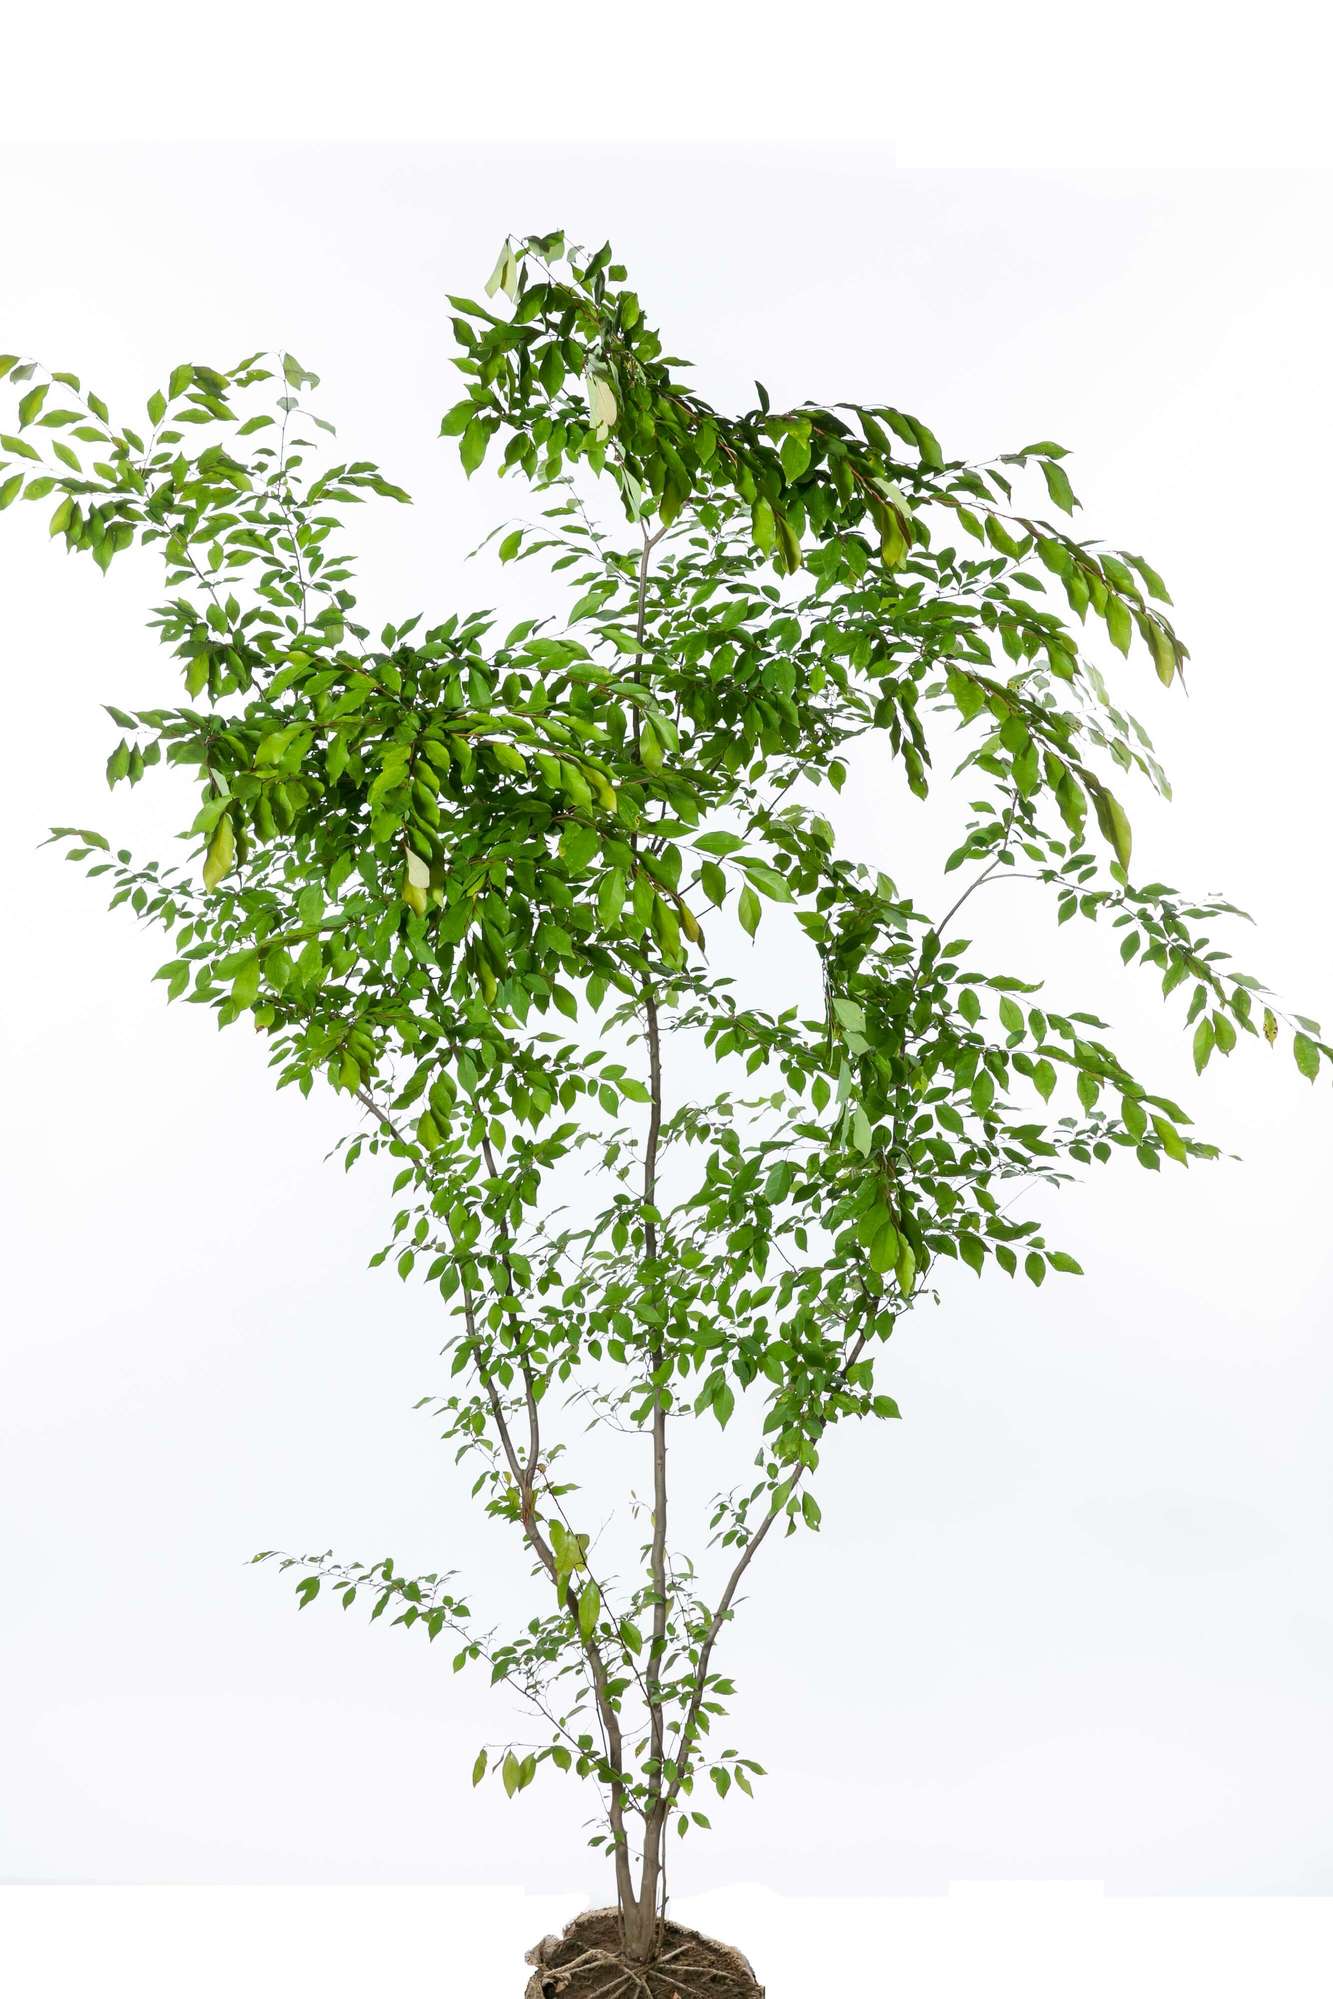 アブラチャン 落葉低木 クスノキ科 植栽